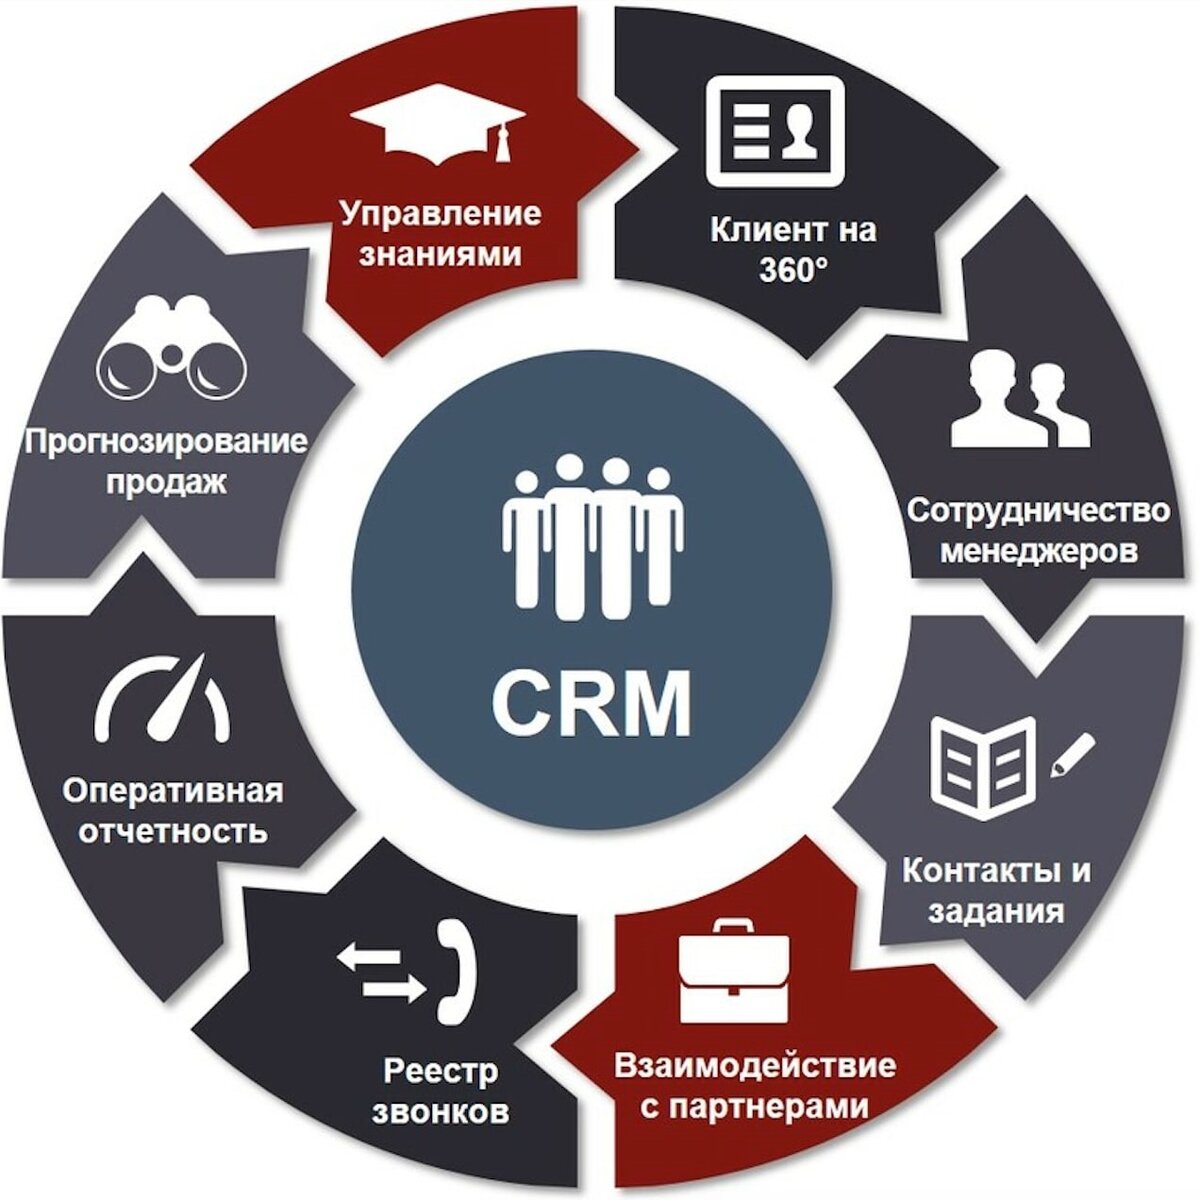 Поставщик контента. CRM системы управления взаимоотношениями с клиентами. GRM - система управления ЗВАИМООТНОШЕНИЯ С клиентами. CRM (customer relationship Management) системы. CRM системы что это.